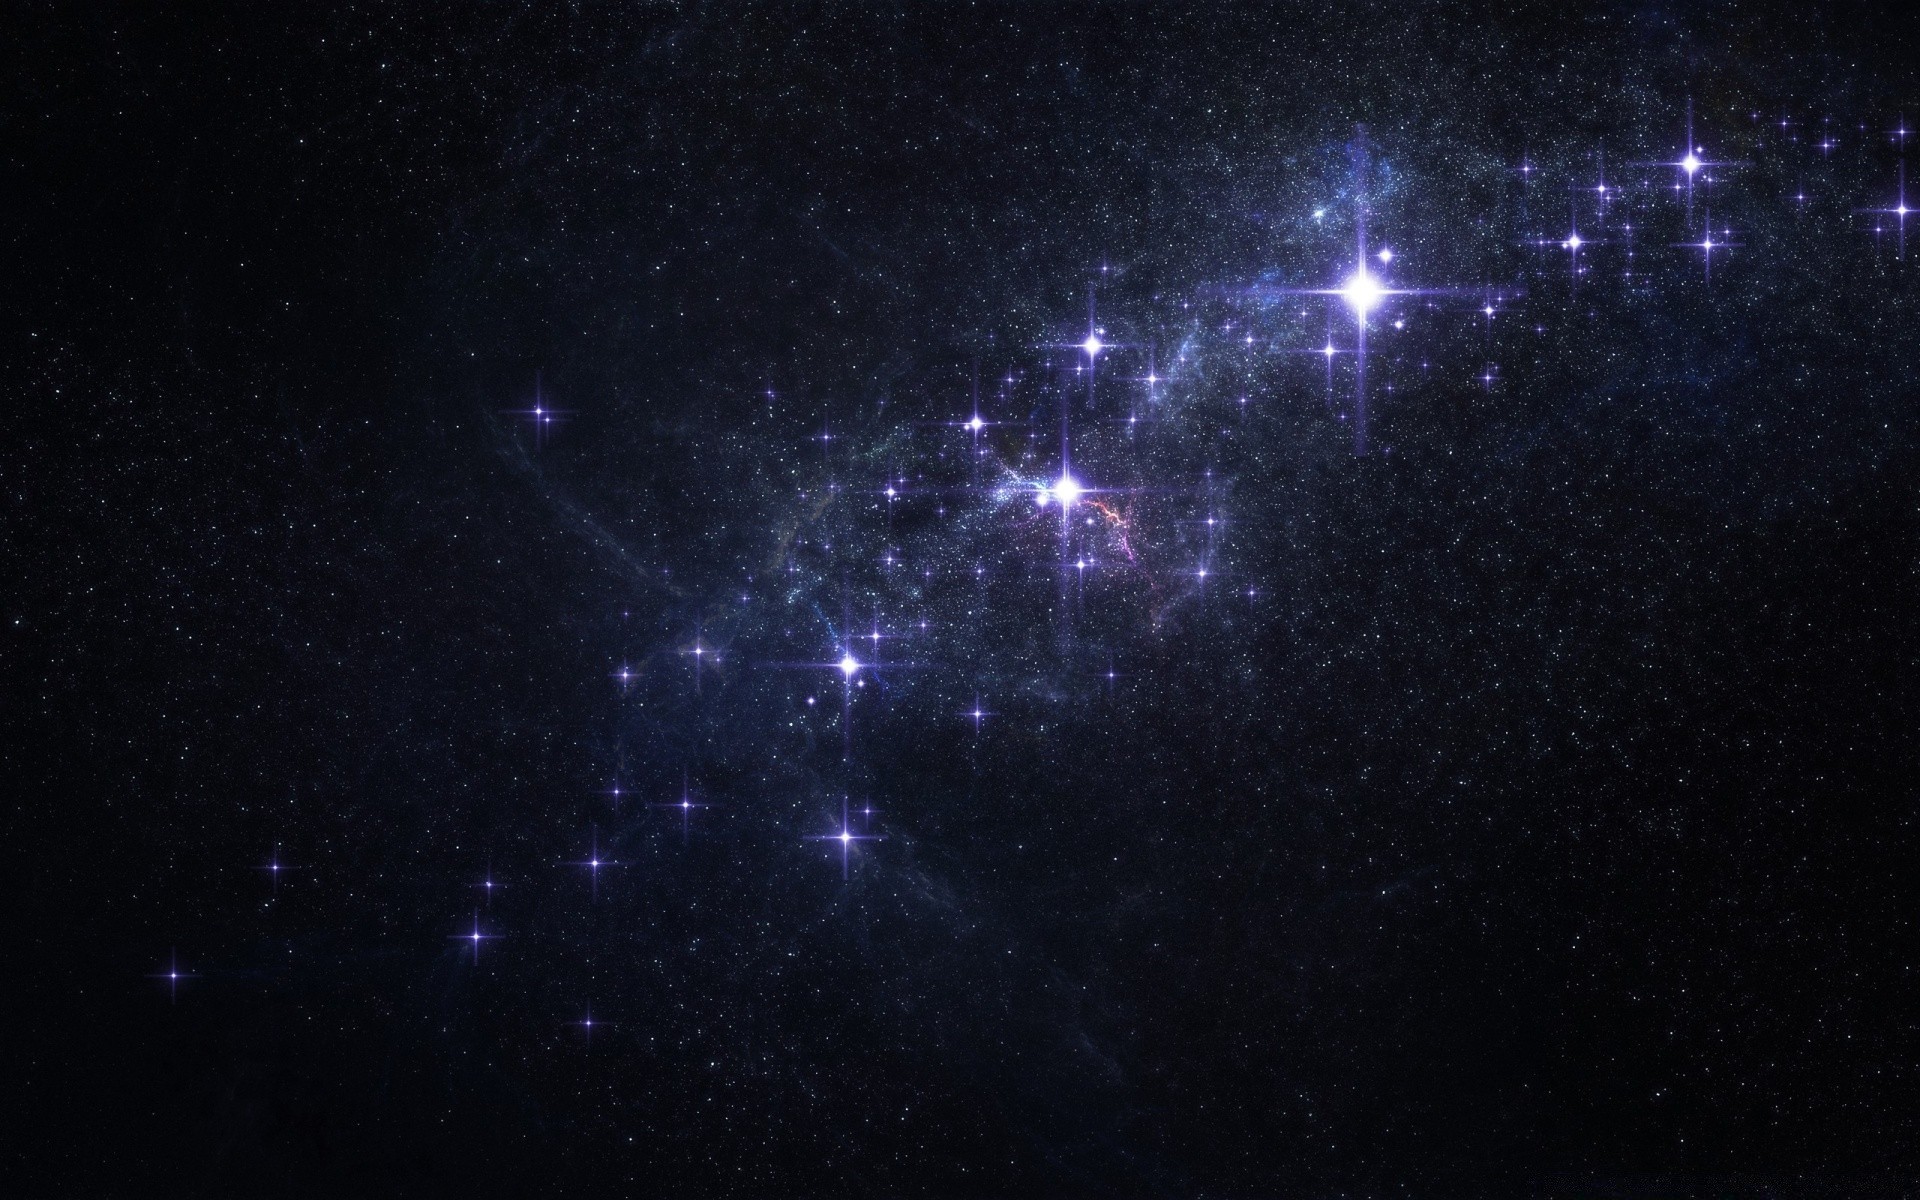 космос астрономия созвездие галактика туманность темный космос пыль бесконечность астрология разведка наука фантазия аннотация телескоп яркий орион стеллар тайна сверхновая